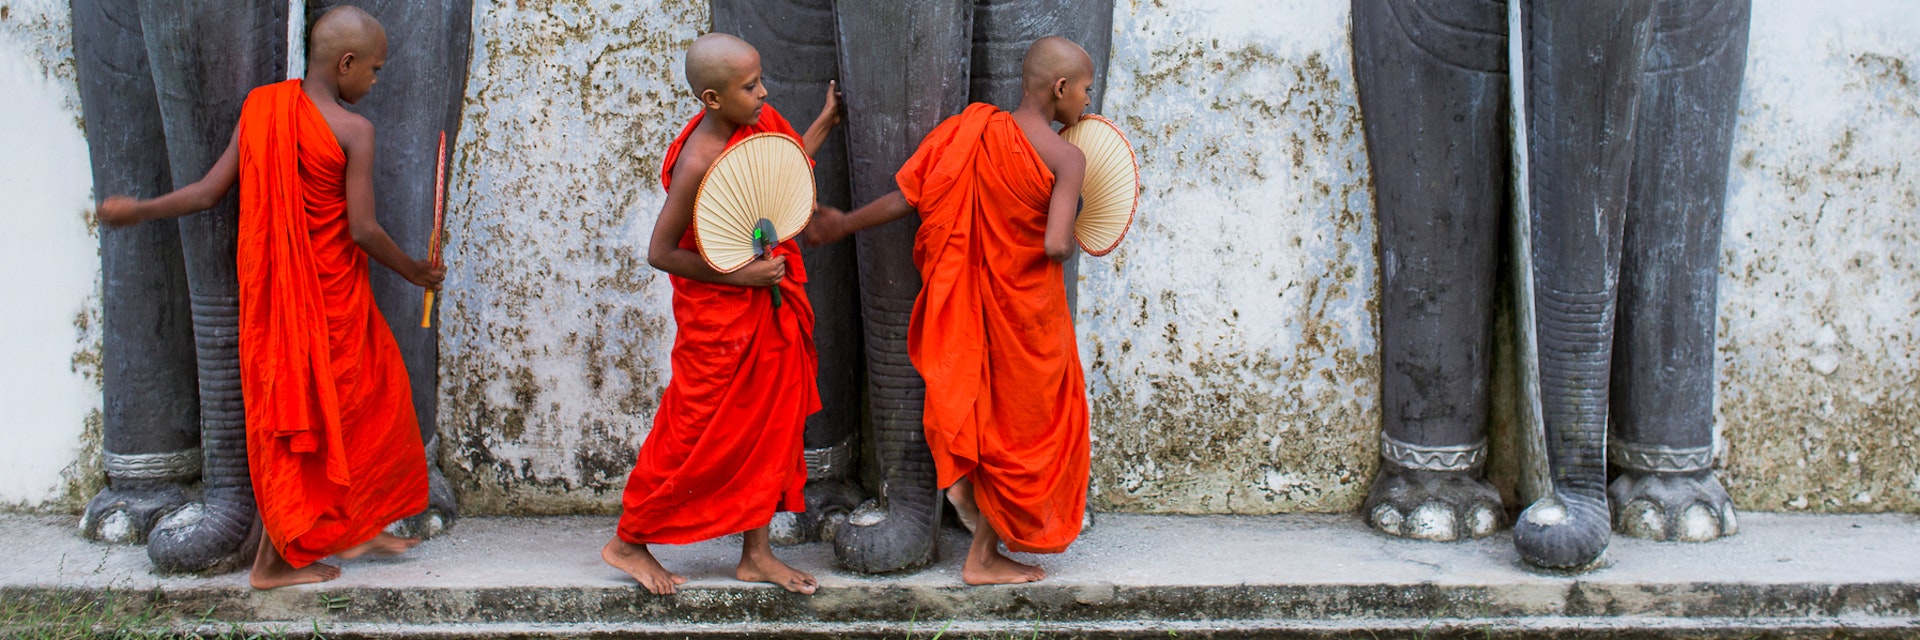 Novice monks feeding monkeys outside temple.  Sri Lanka.